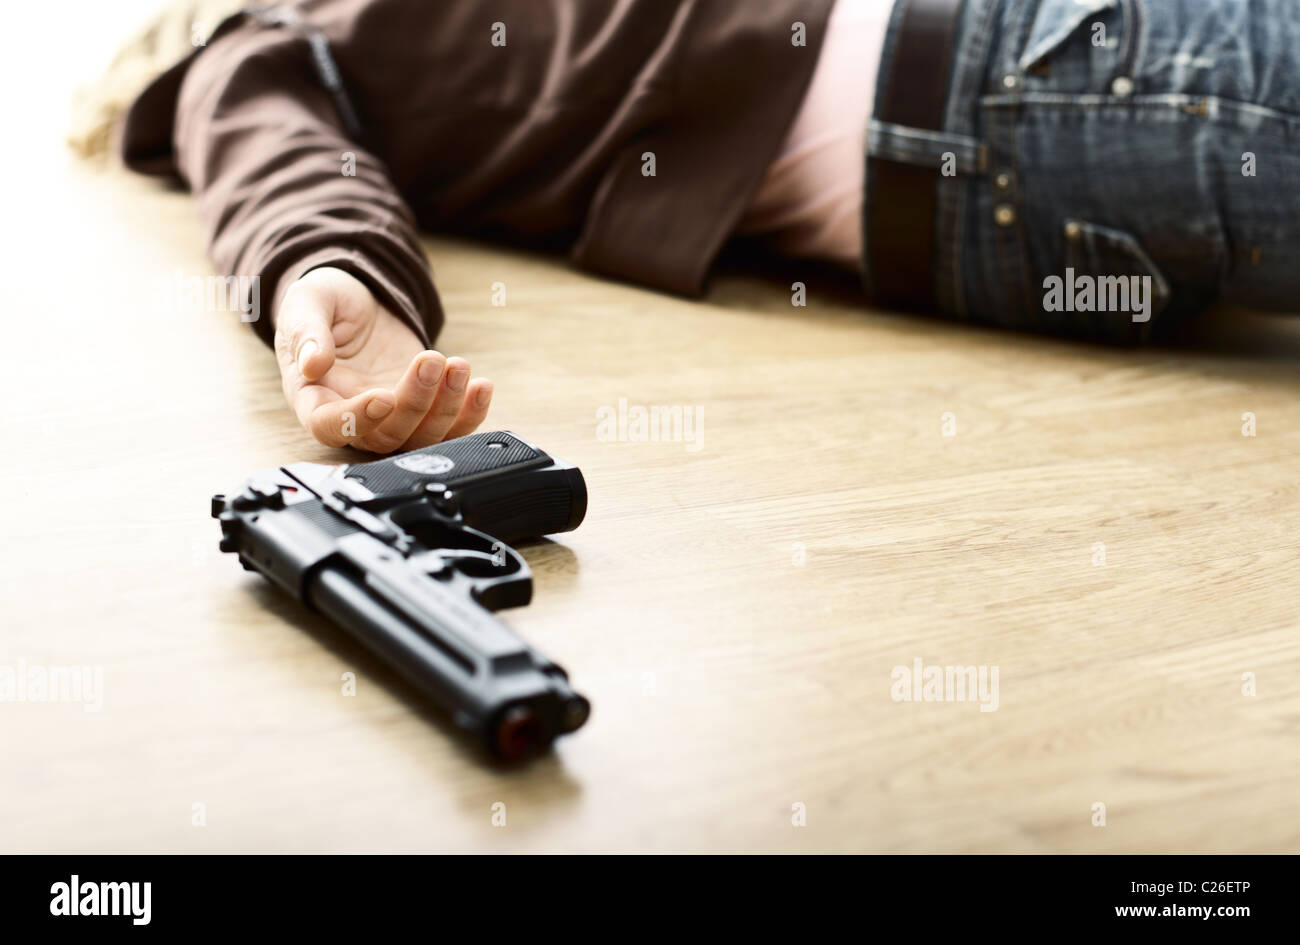 Tatort, Leiche auf Boden und Pistole, selektiven Fokus Bild Stockfoto